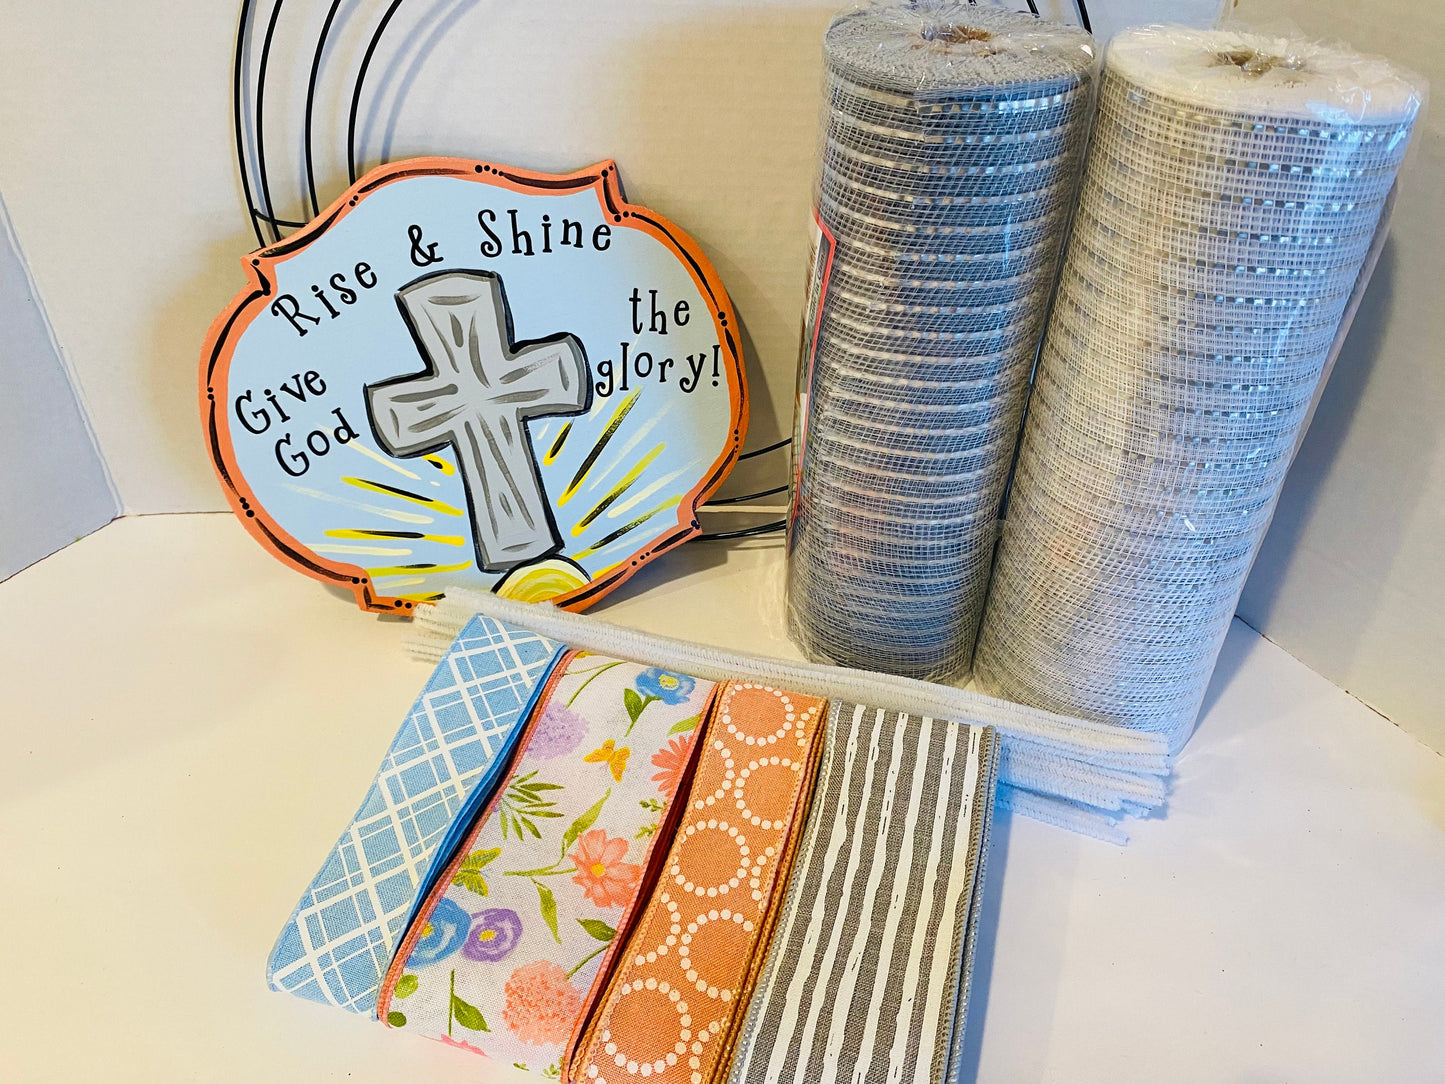 Rise & Shine Spring Spiritual Easter DIY Wreath Kit